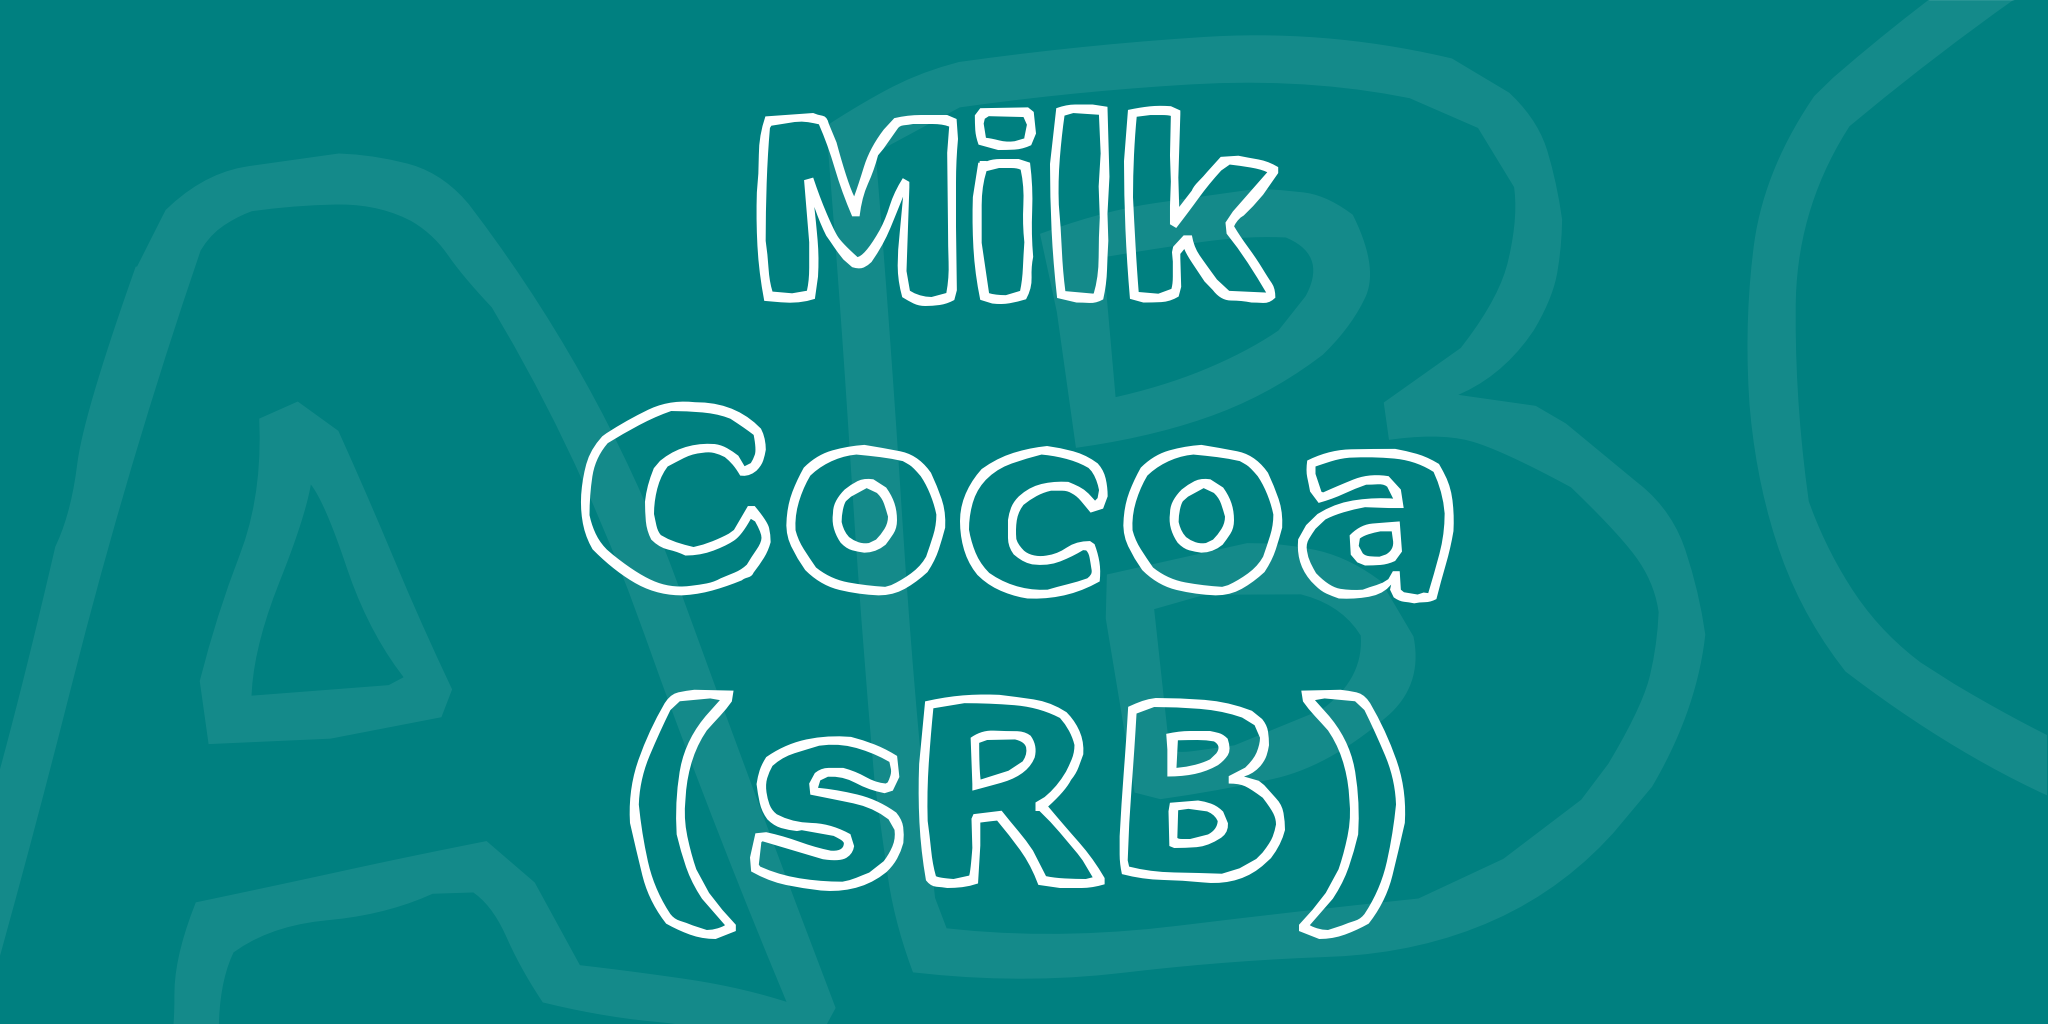 Milk Cocoa Srb